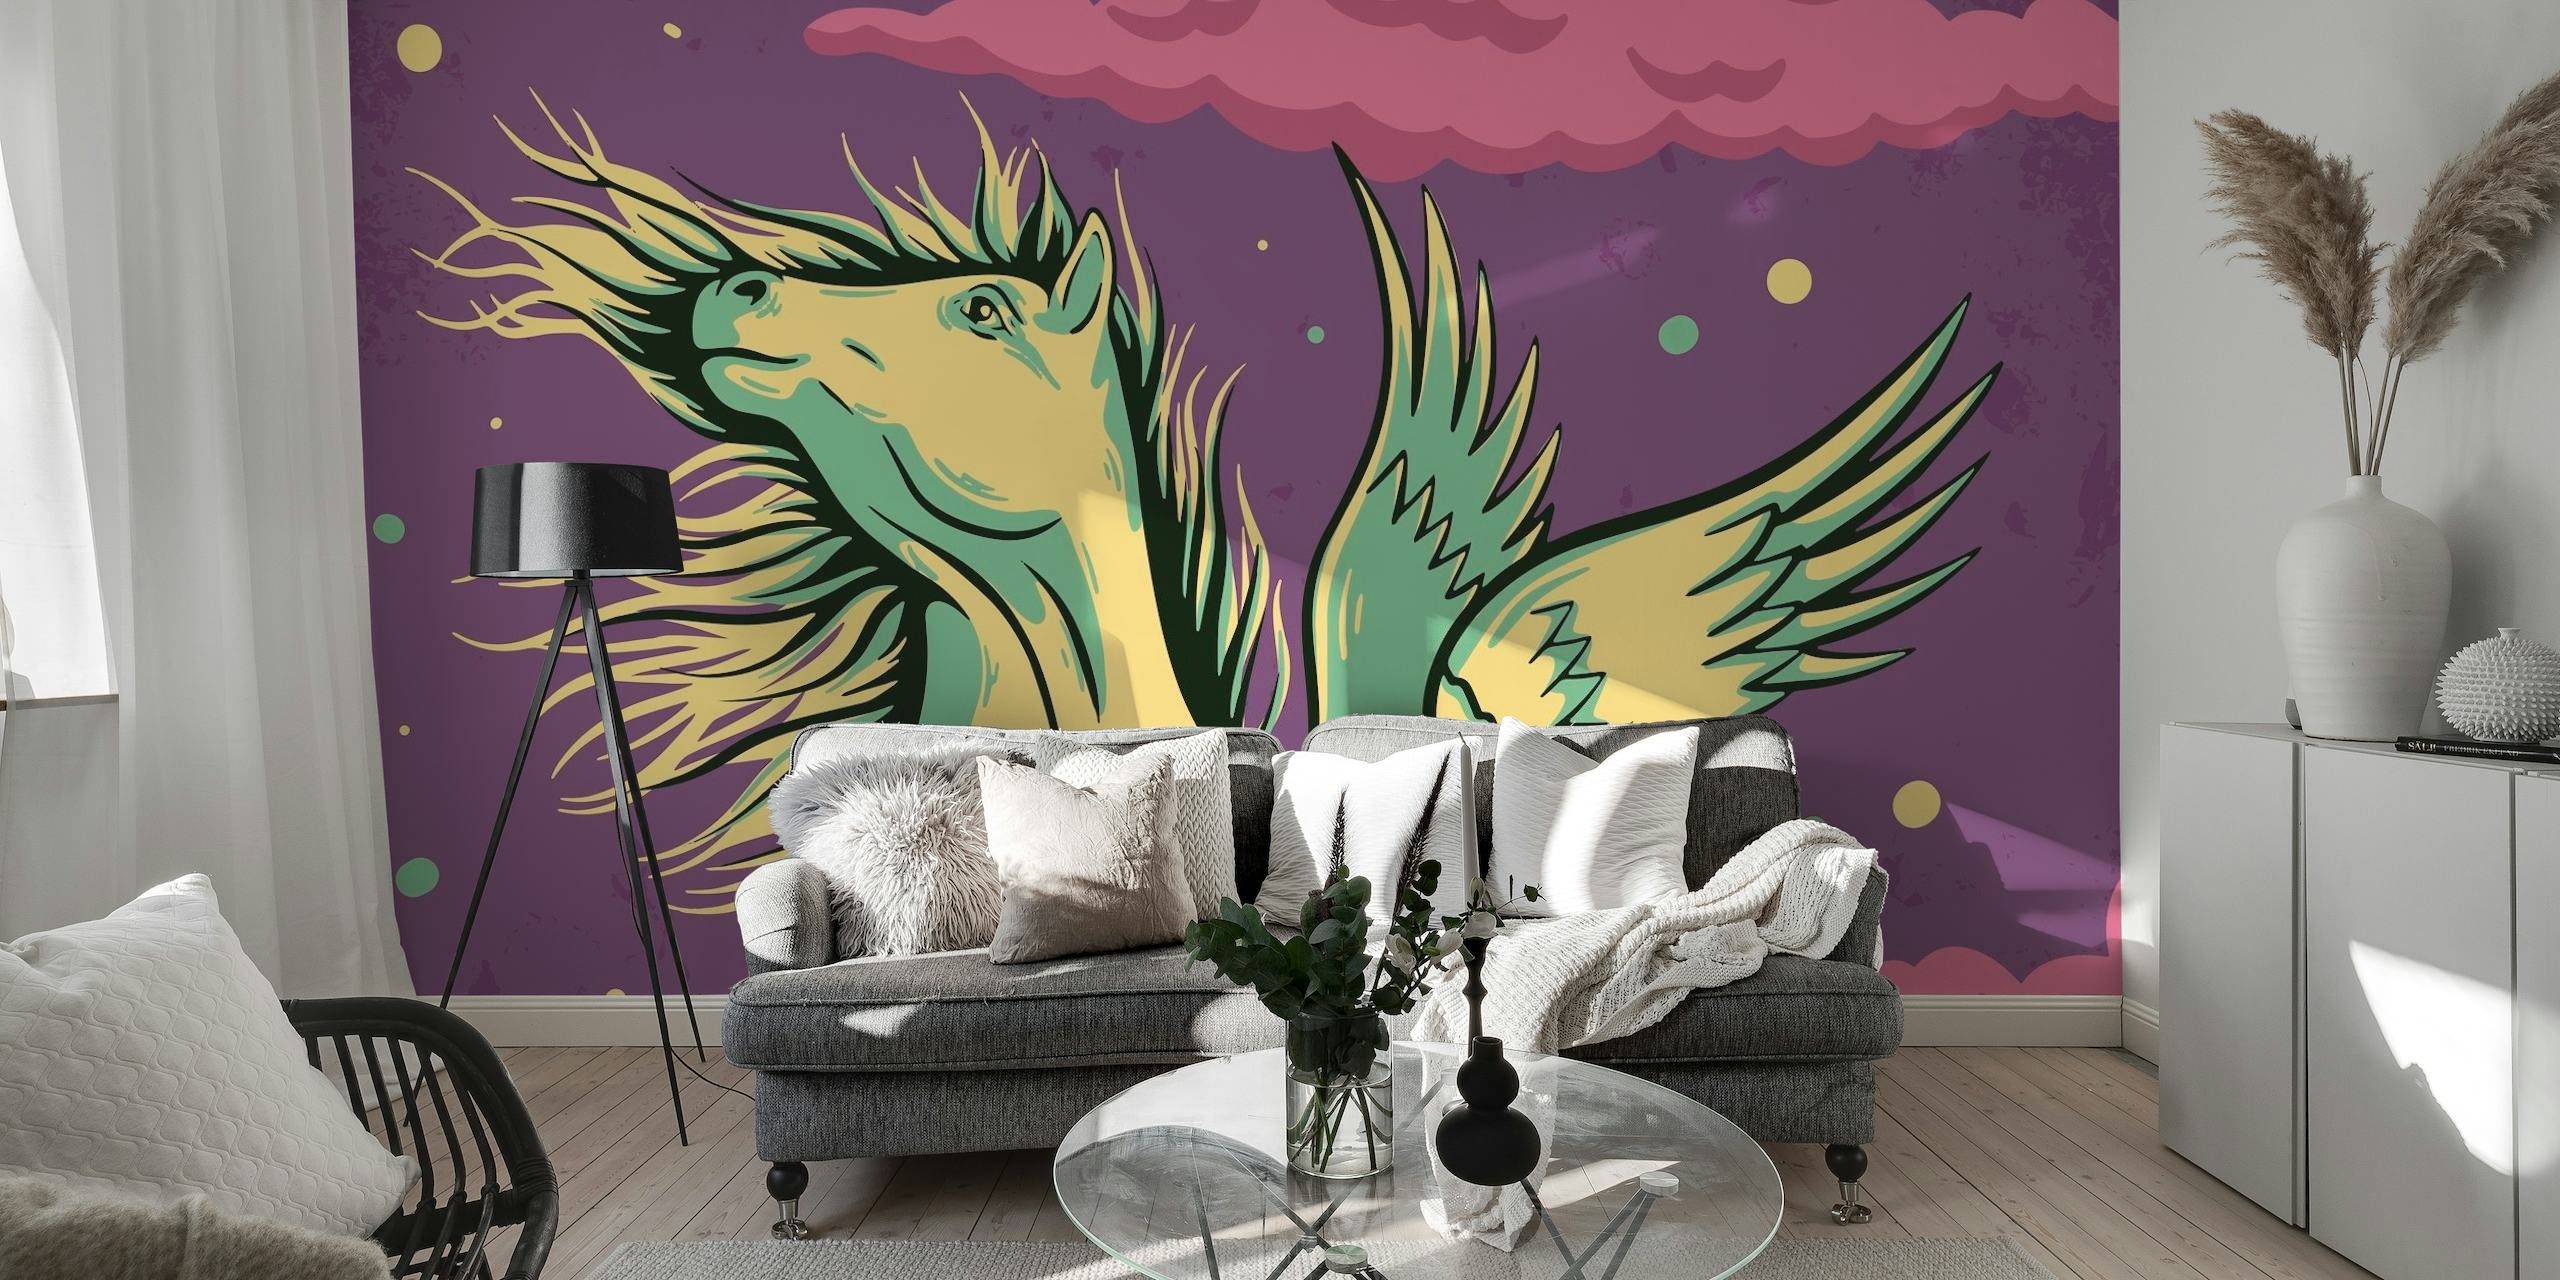 Pegasus-seinämaalaus myyttisellä hevosella tähtitaivaalla